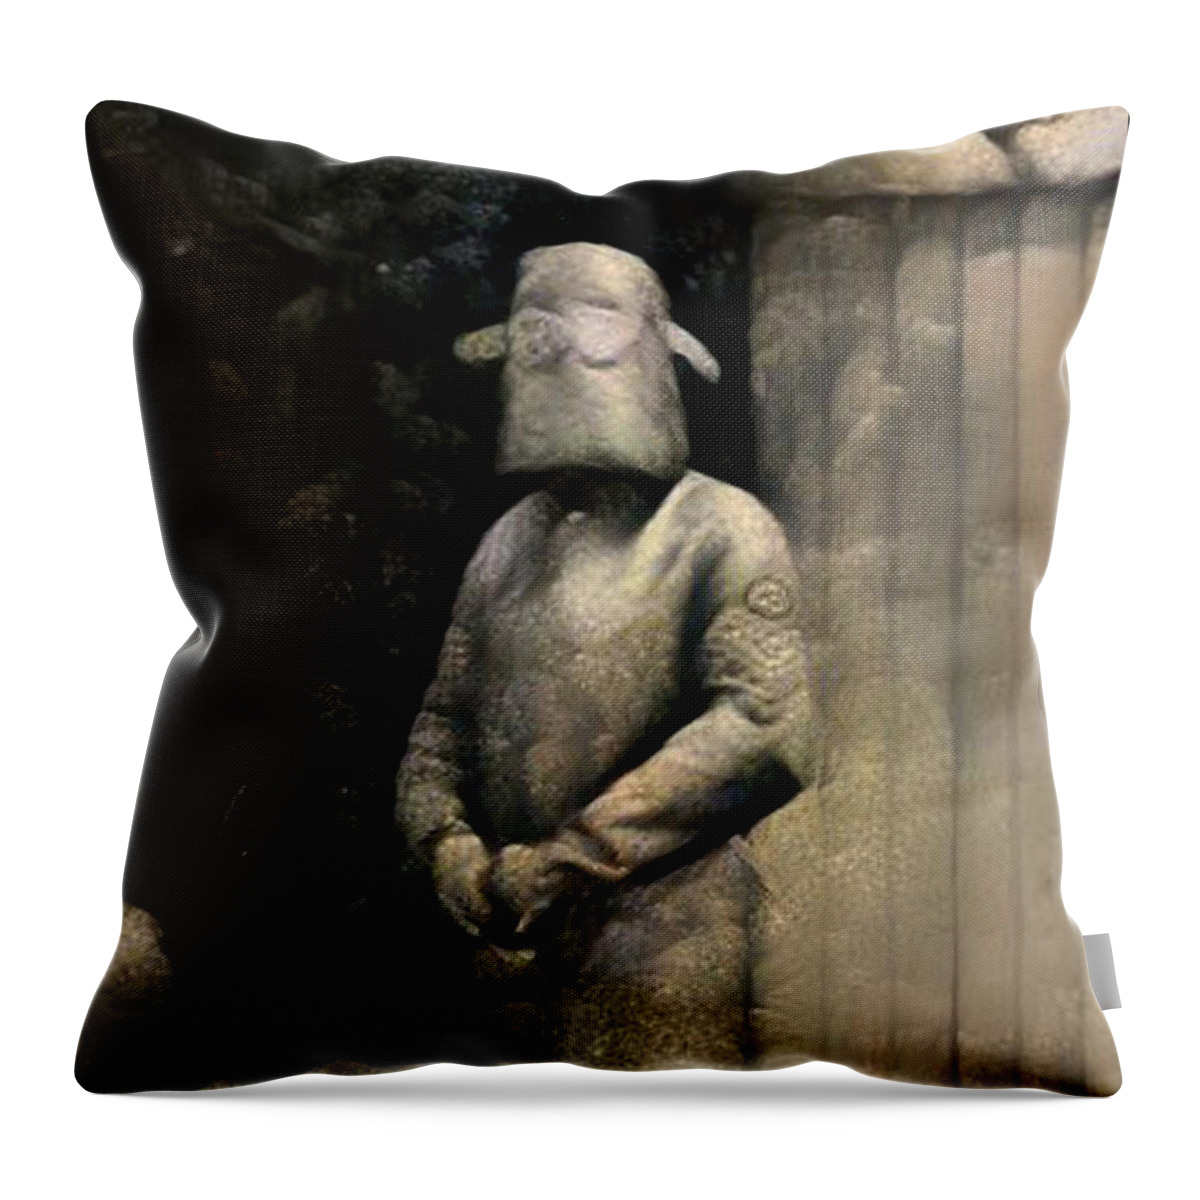 Mask Throw Pillow featuring the digital art Rock Bottom by Matthew Lazure